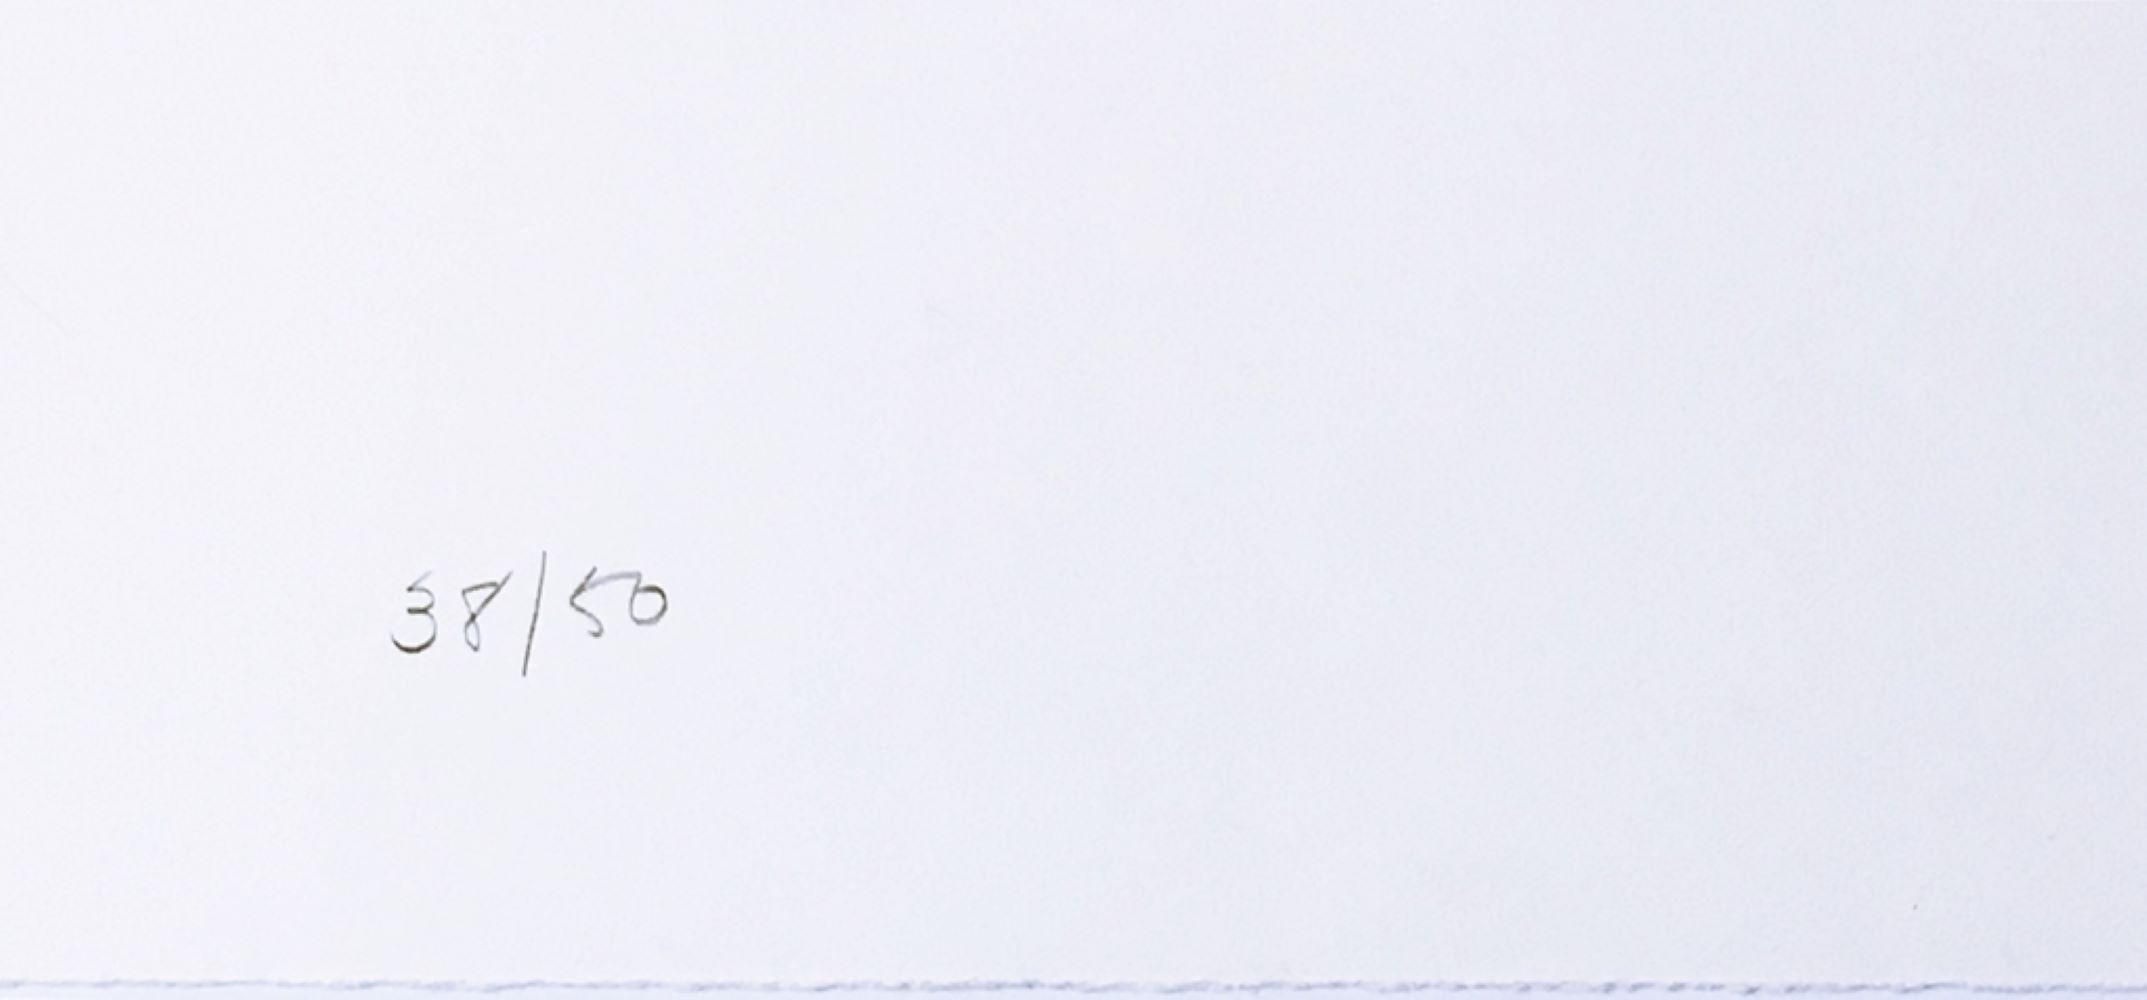 Gael Stack
Ohne Titel, aus der Mappe Kunst gegen AIDS, 1988
Holzschnitt auf Papier mit Büttenrand. Handsigniert. Nummeriert. Blindstempel von Druckerei und Verlag. Ungerahmt.
Handsigniert und nummeriert auf dem unteren Recto (Vorderseite) mit